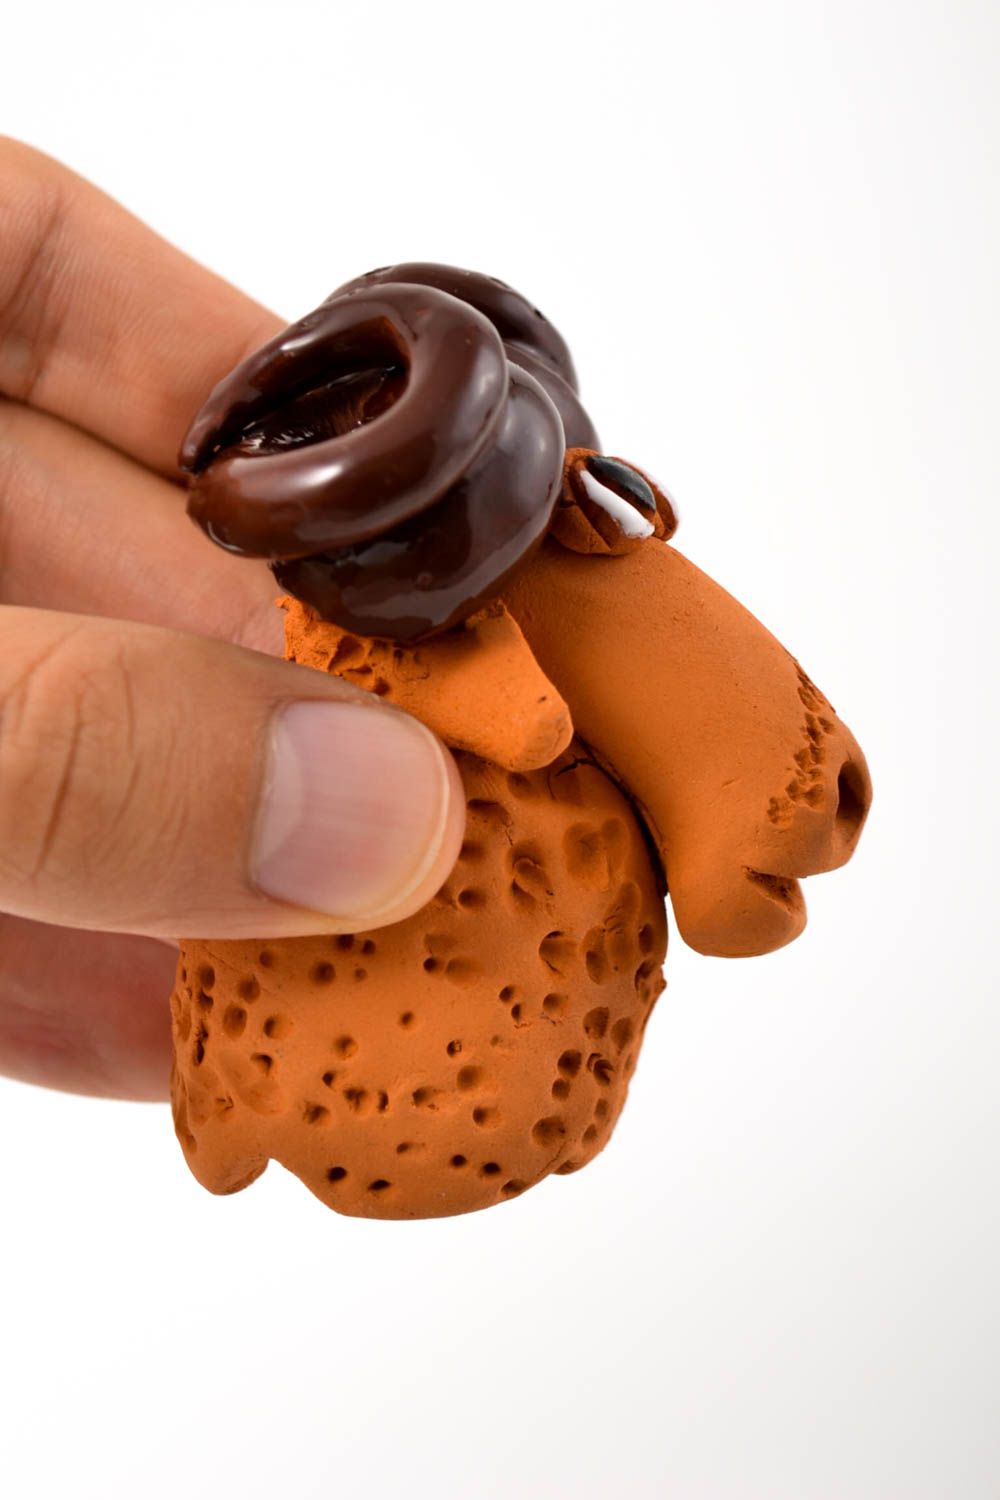 Agnello in ceramica fatto a mano figurina divertente souvenir originale foto 2